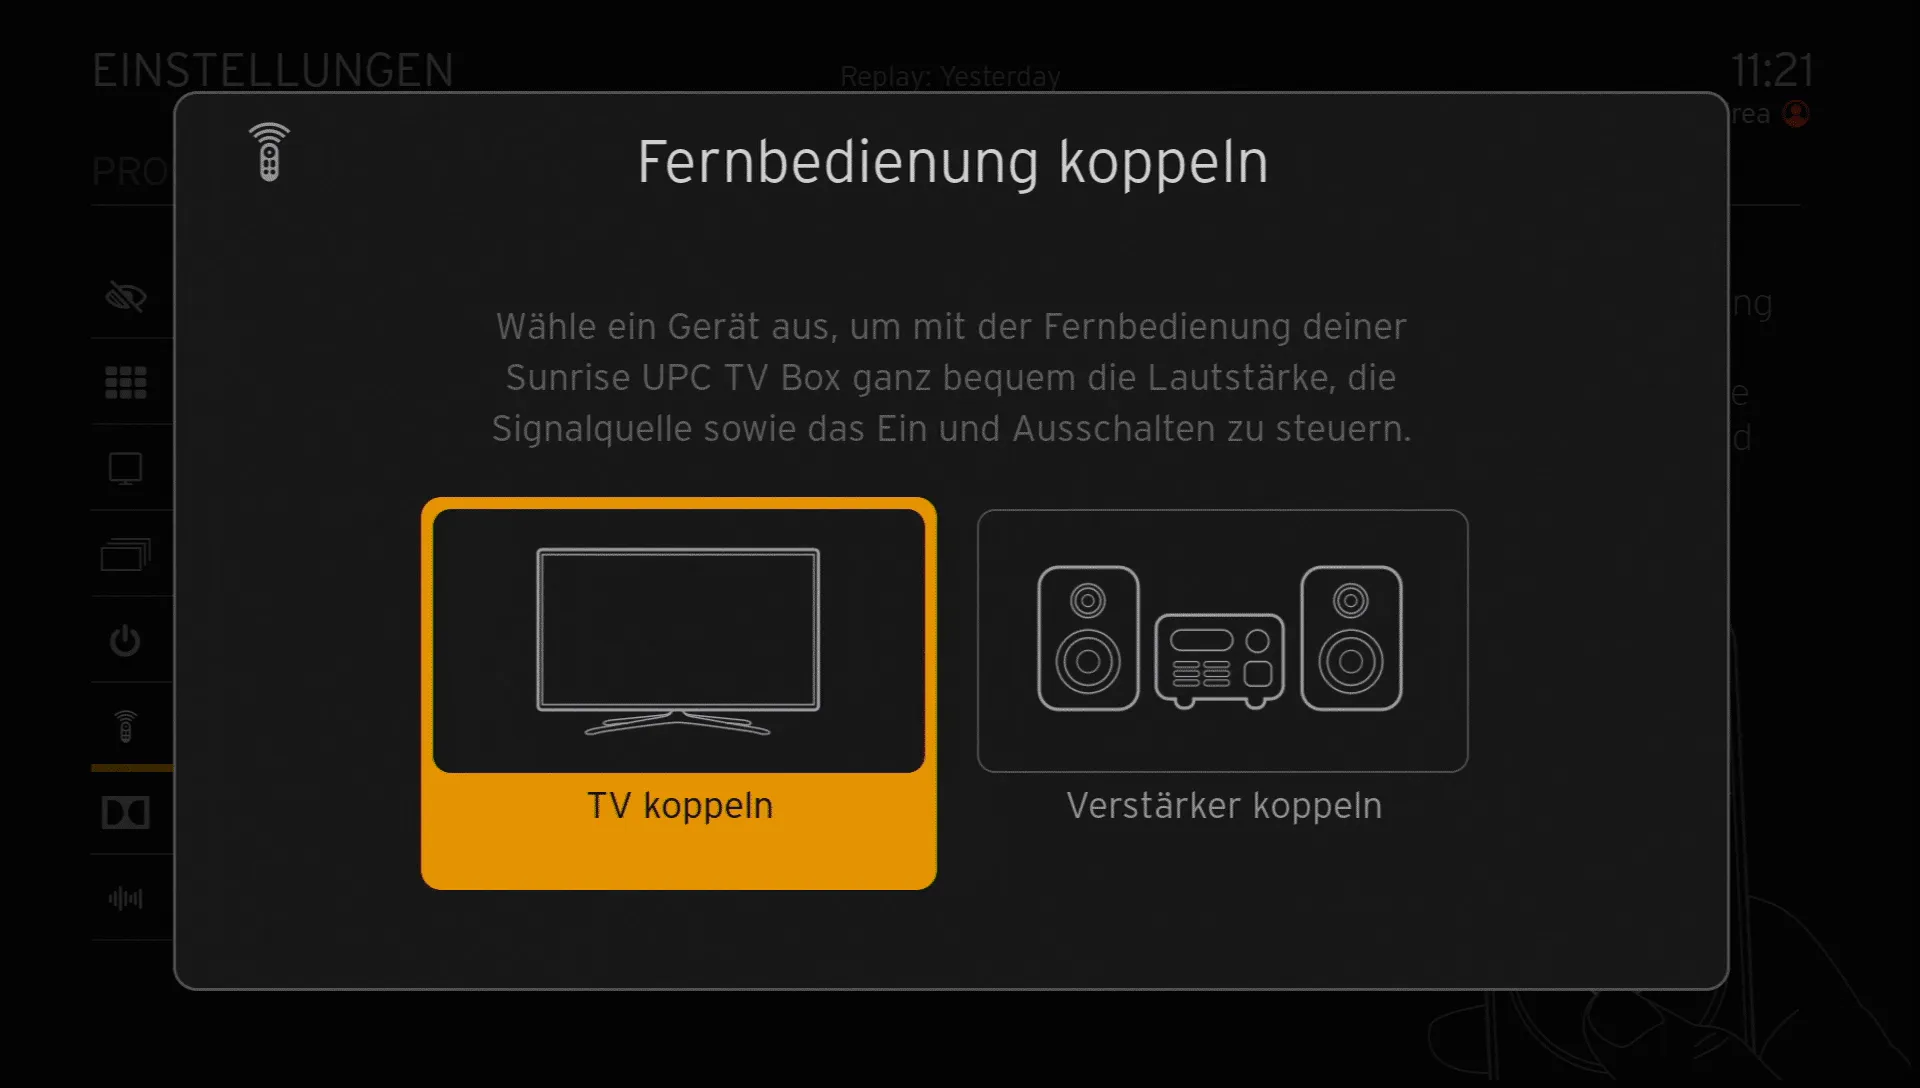 Bildschirm mit Auswahl "TV koppeln" angewählt.